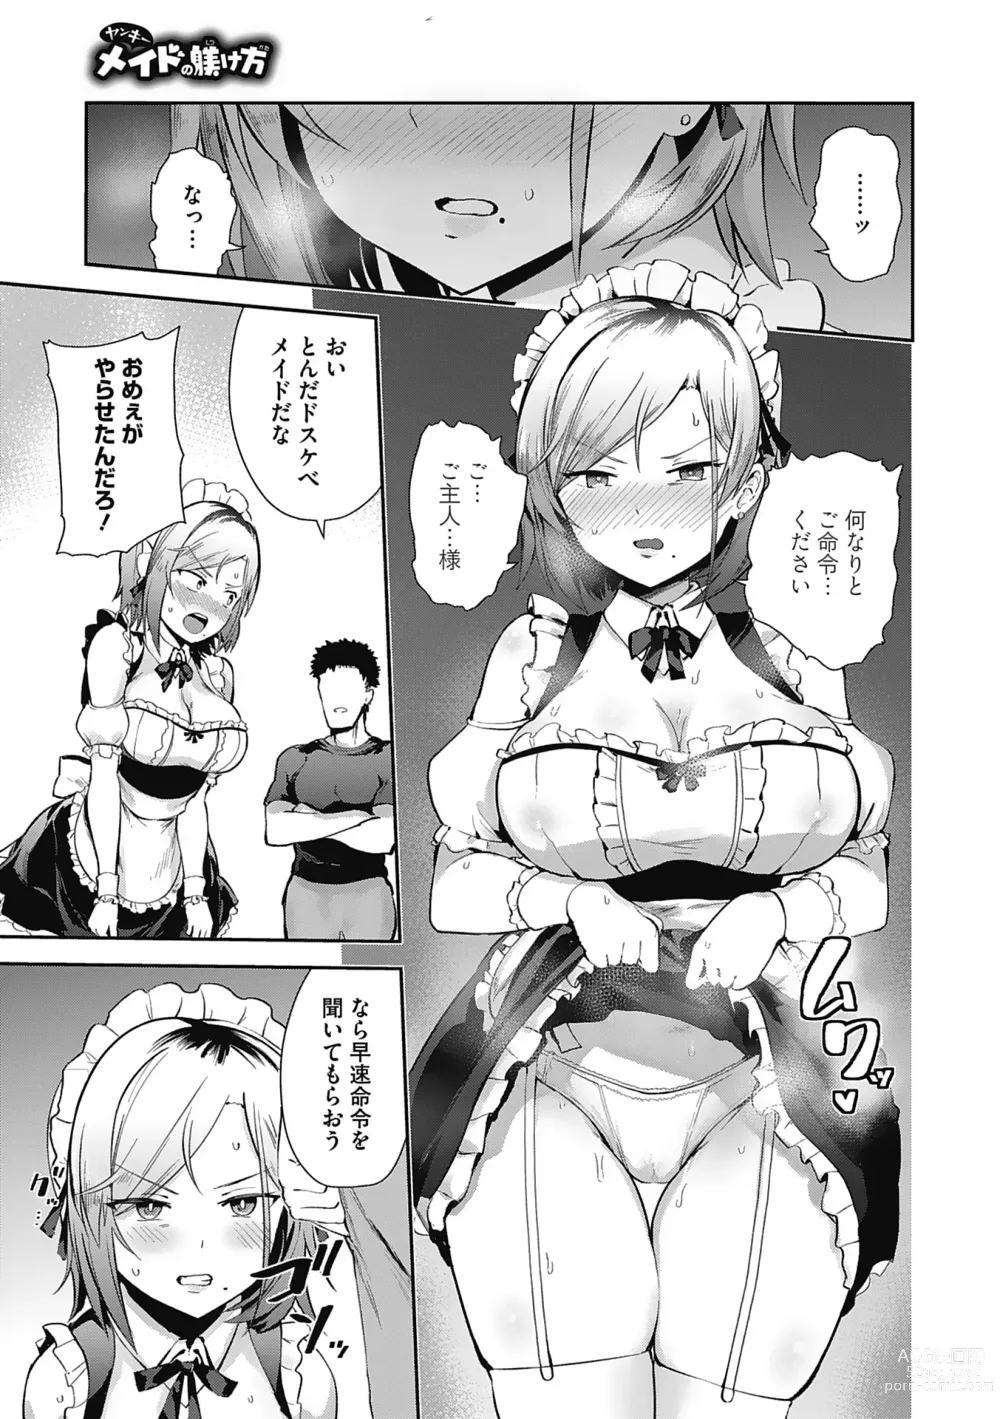 Page 91 of manga Kegasaretai-kei Kanojo.